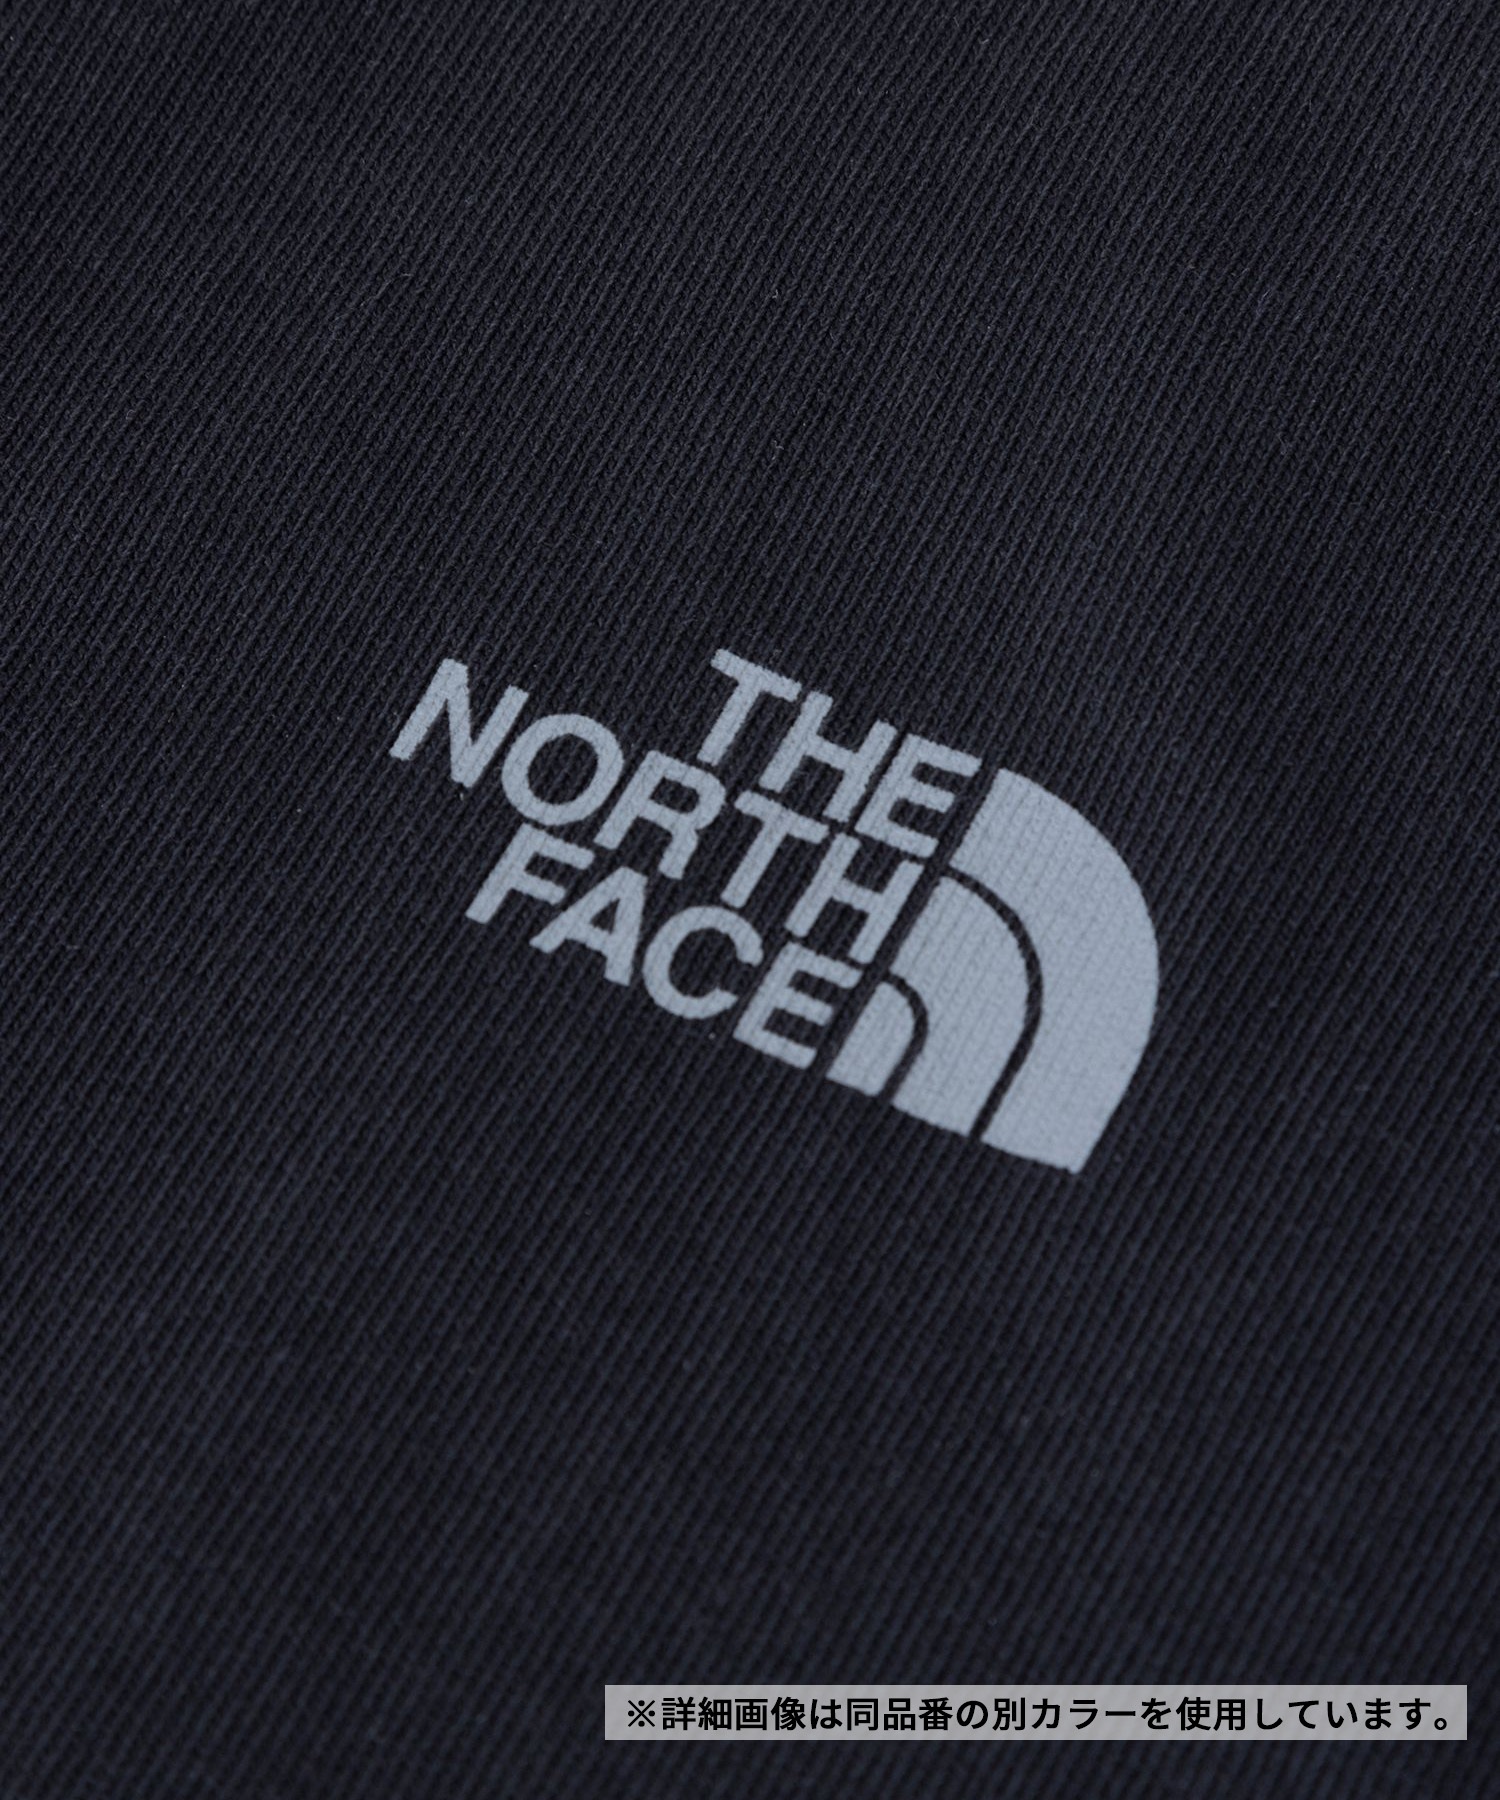 THE NORTH FACE ザ・ノース・フェイス メンズ Tシャツ 半袖 ショートスリーブデーフローティー NT32452 OW(OW-M)